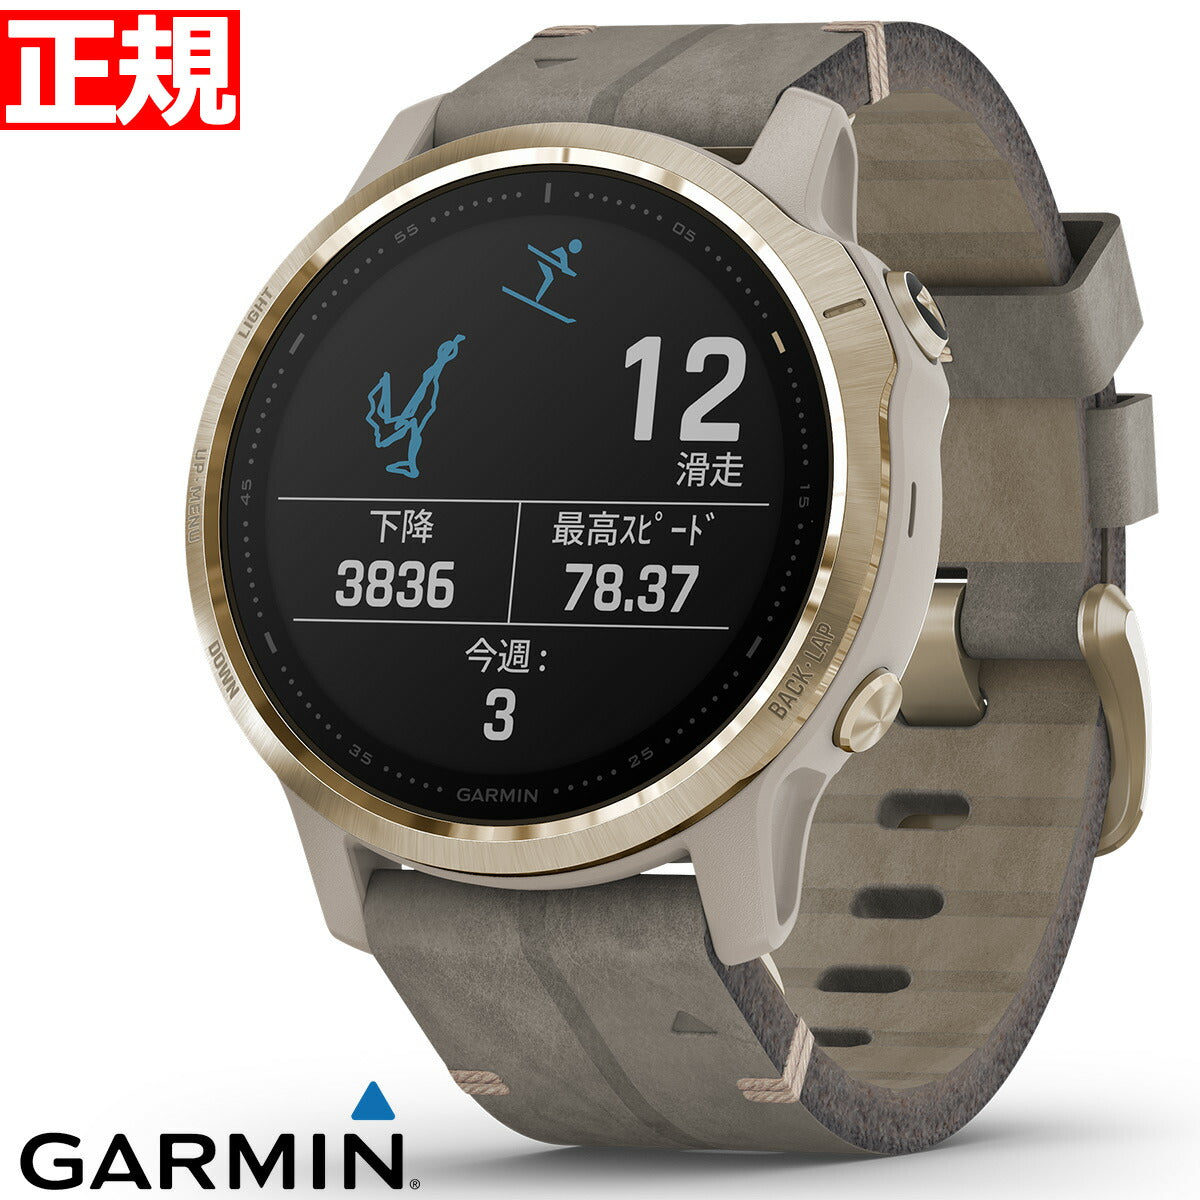 【特価販売！】ガーミン GARMIN fenix 6S Sapphire Tundra Light Gold Leather band フェニックス 6S マルチスポーツ GPS スマートウォッチ ウェアラブル 腕時計 010-02159-8M